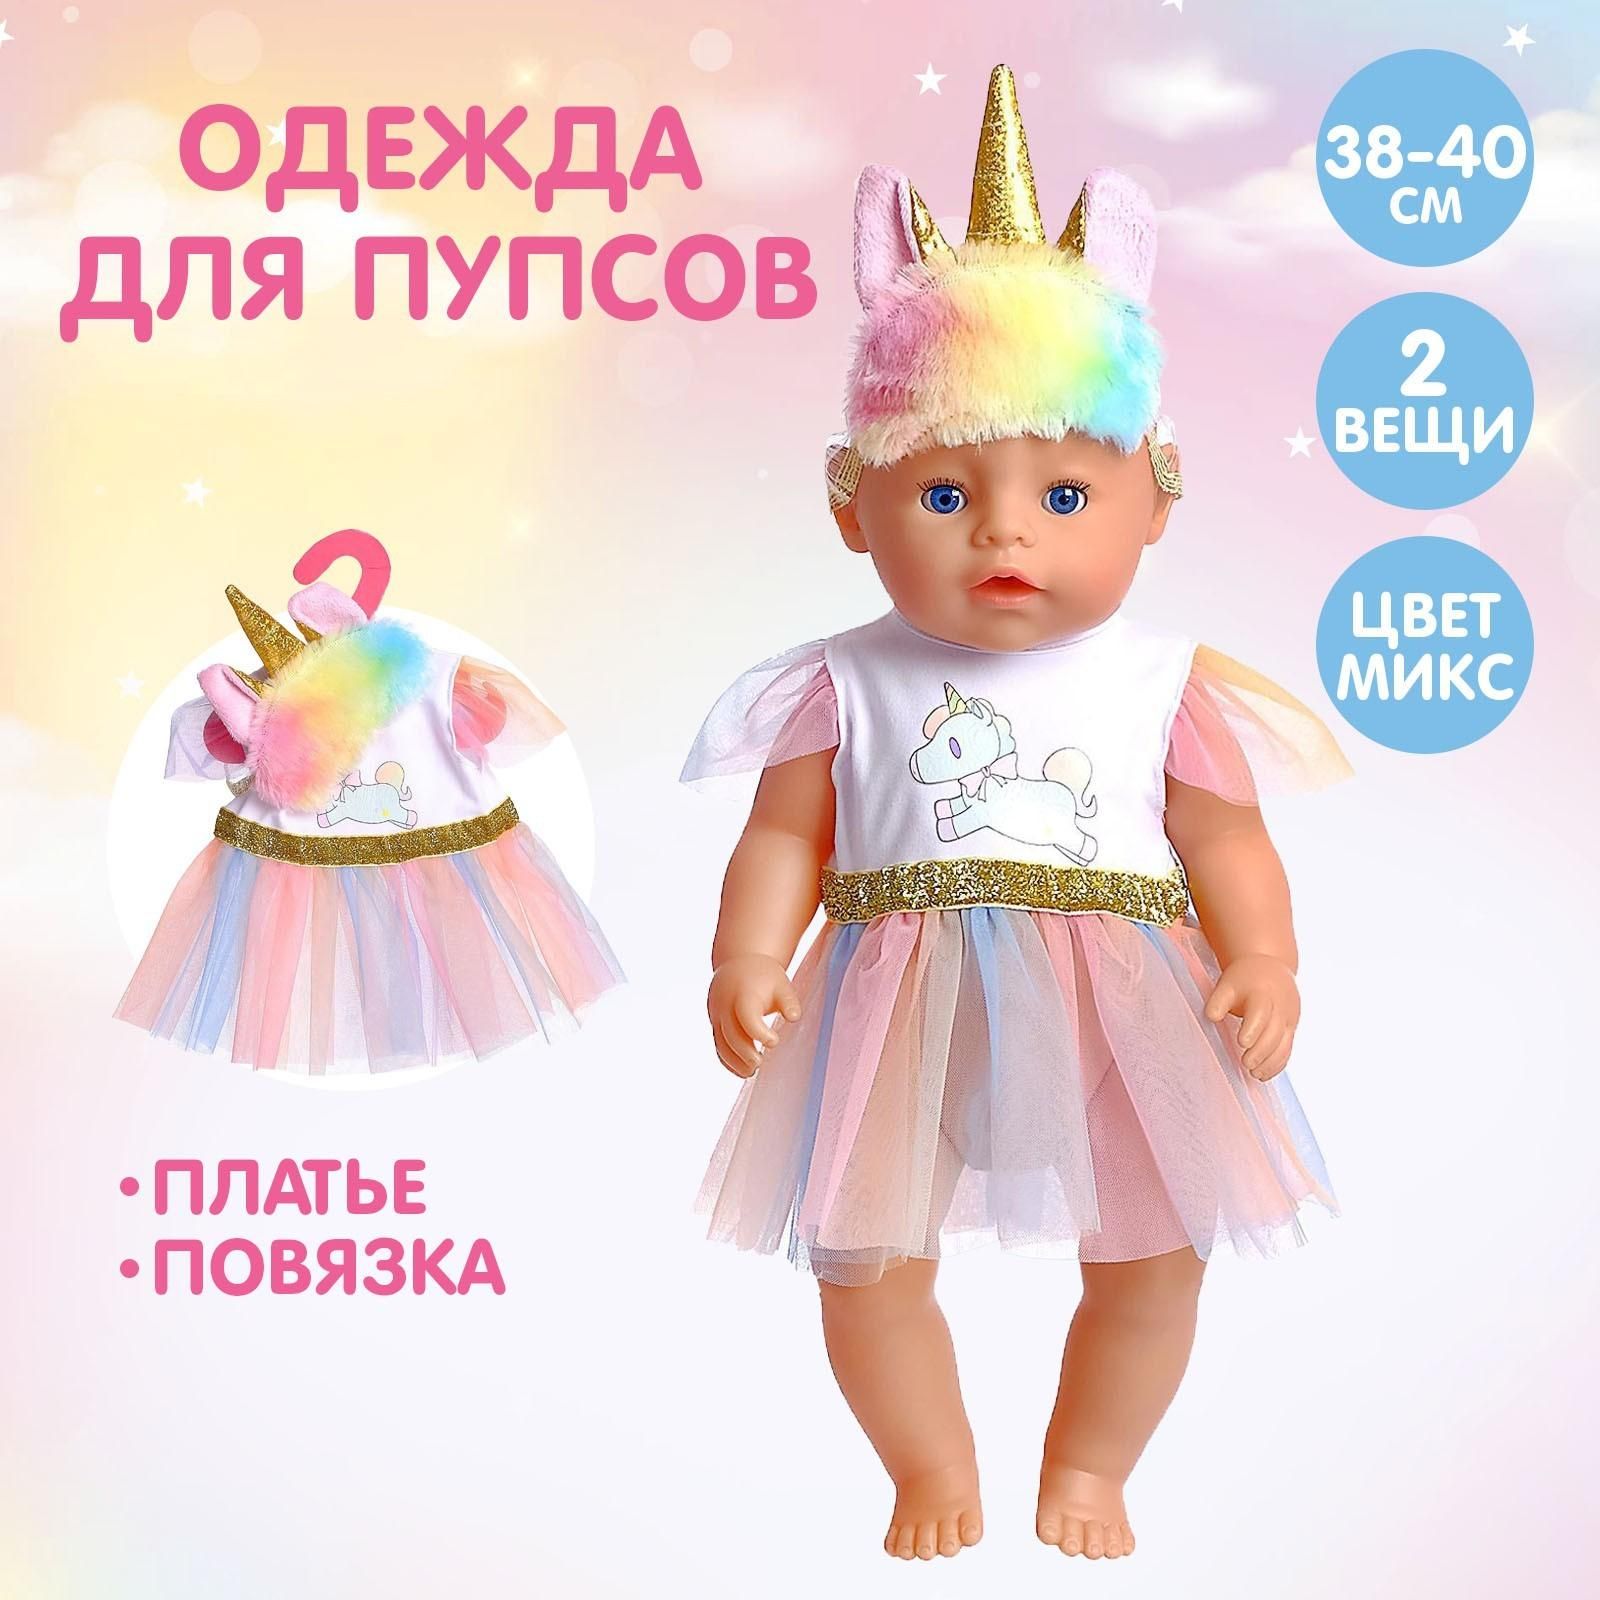 Миниатюрная одёжка для кукол | ВКонтакте